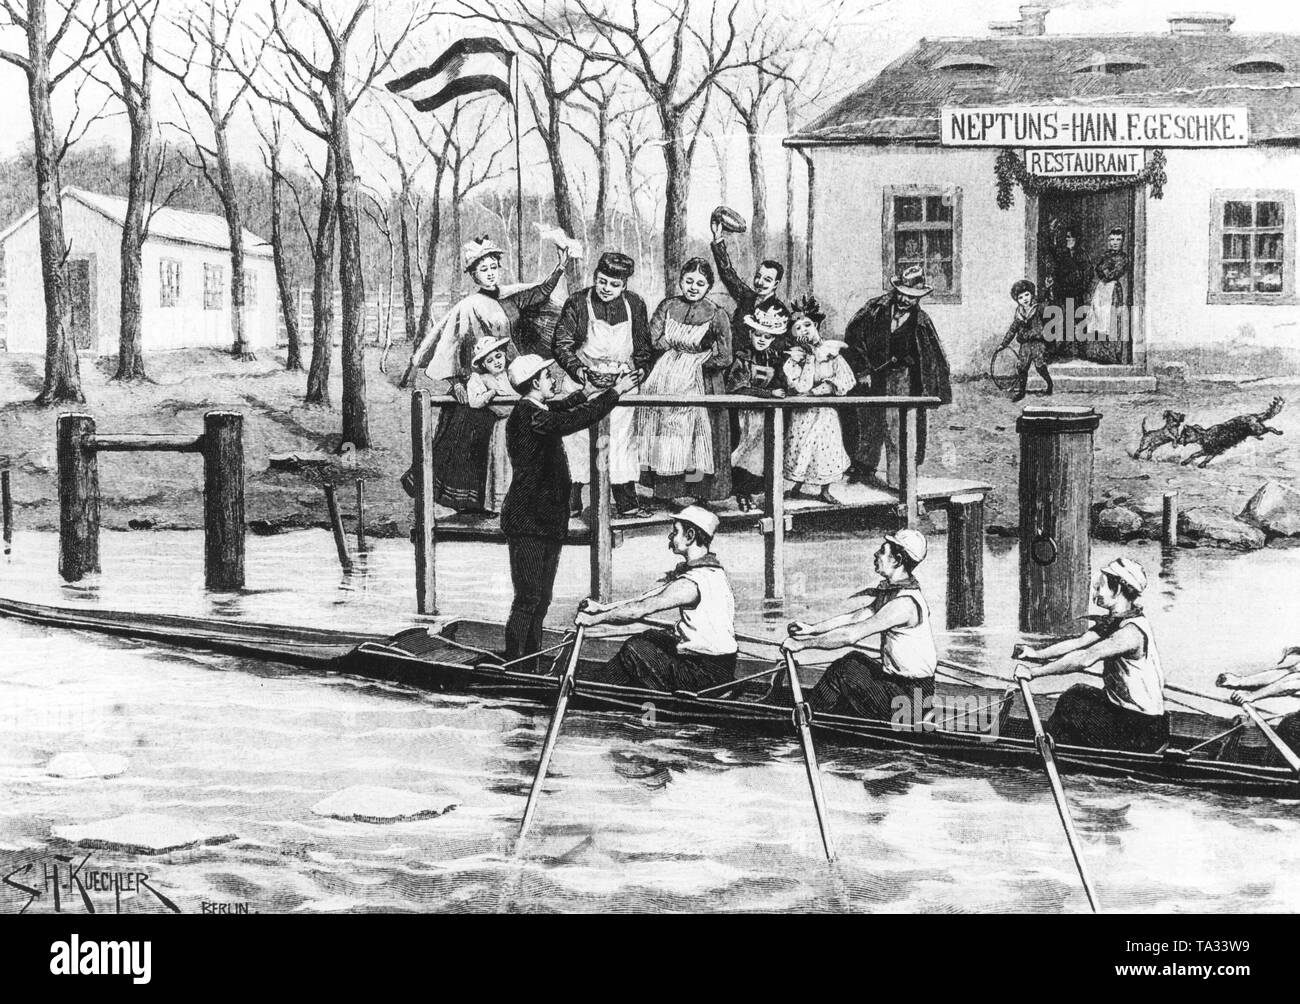 Postkarte mit Ruderern aus Berlin, an der Spree um 1895 im Rahmen der so genannten "Eiertribut", einem alten Brauch der Berliner ruderer an der Oberspree. Im Hintergrund ist das Restaurant Neptuns Hain. Abbildung aus einer Zeitung. Stockfoto